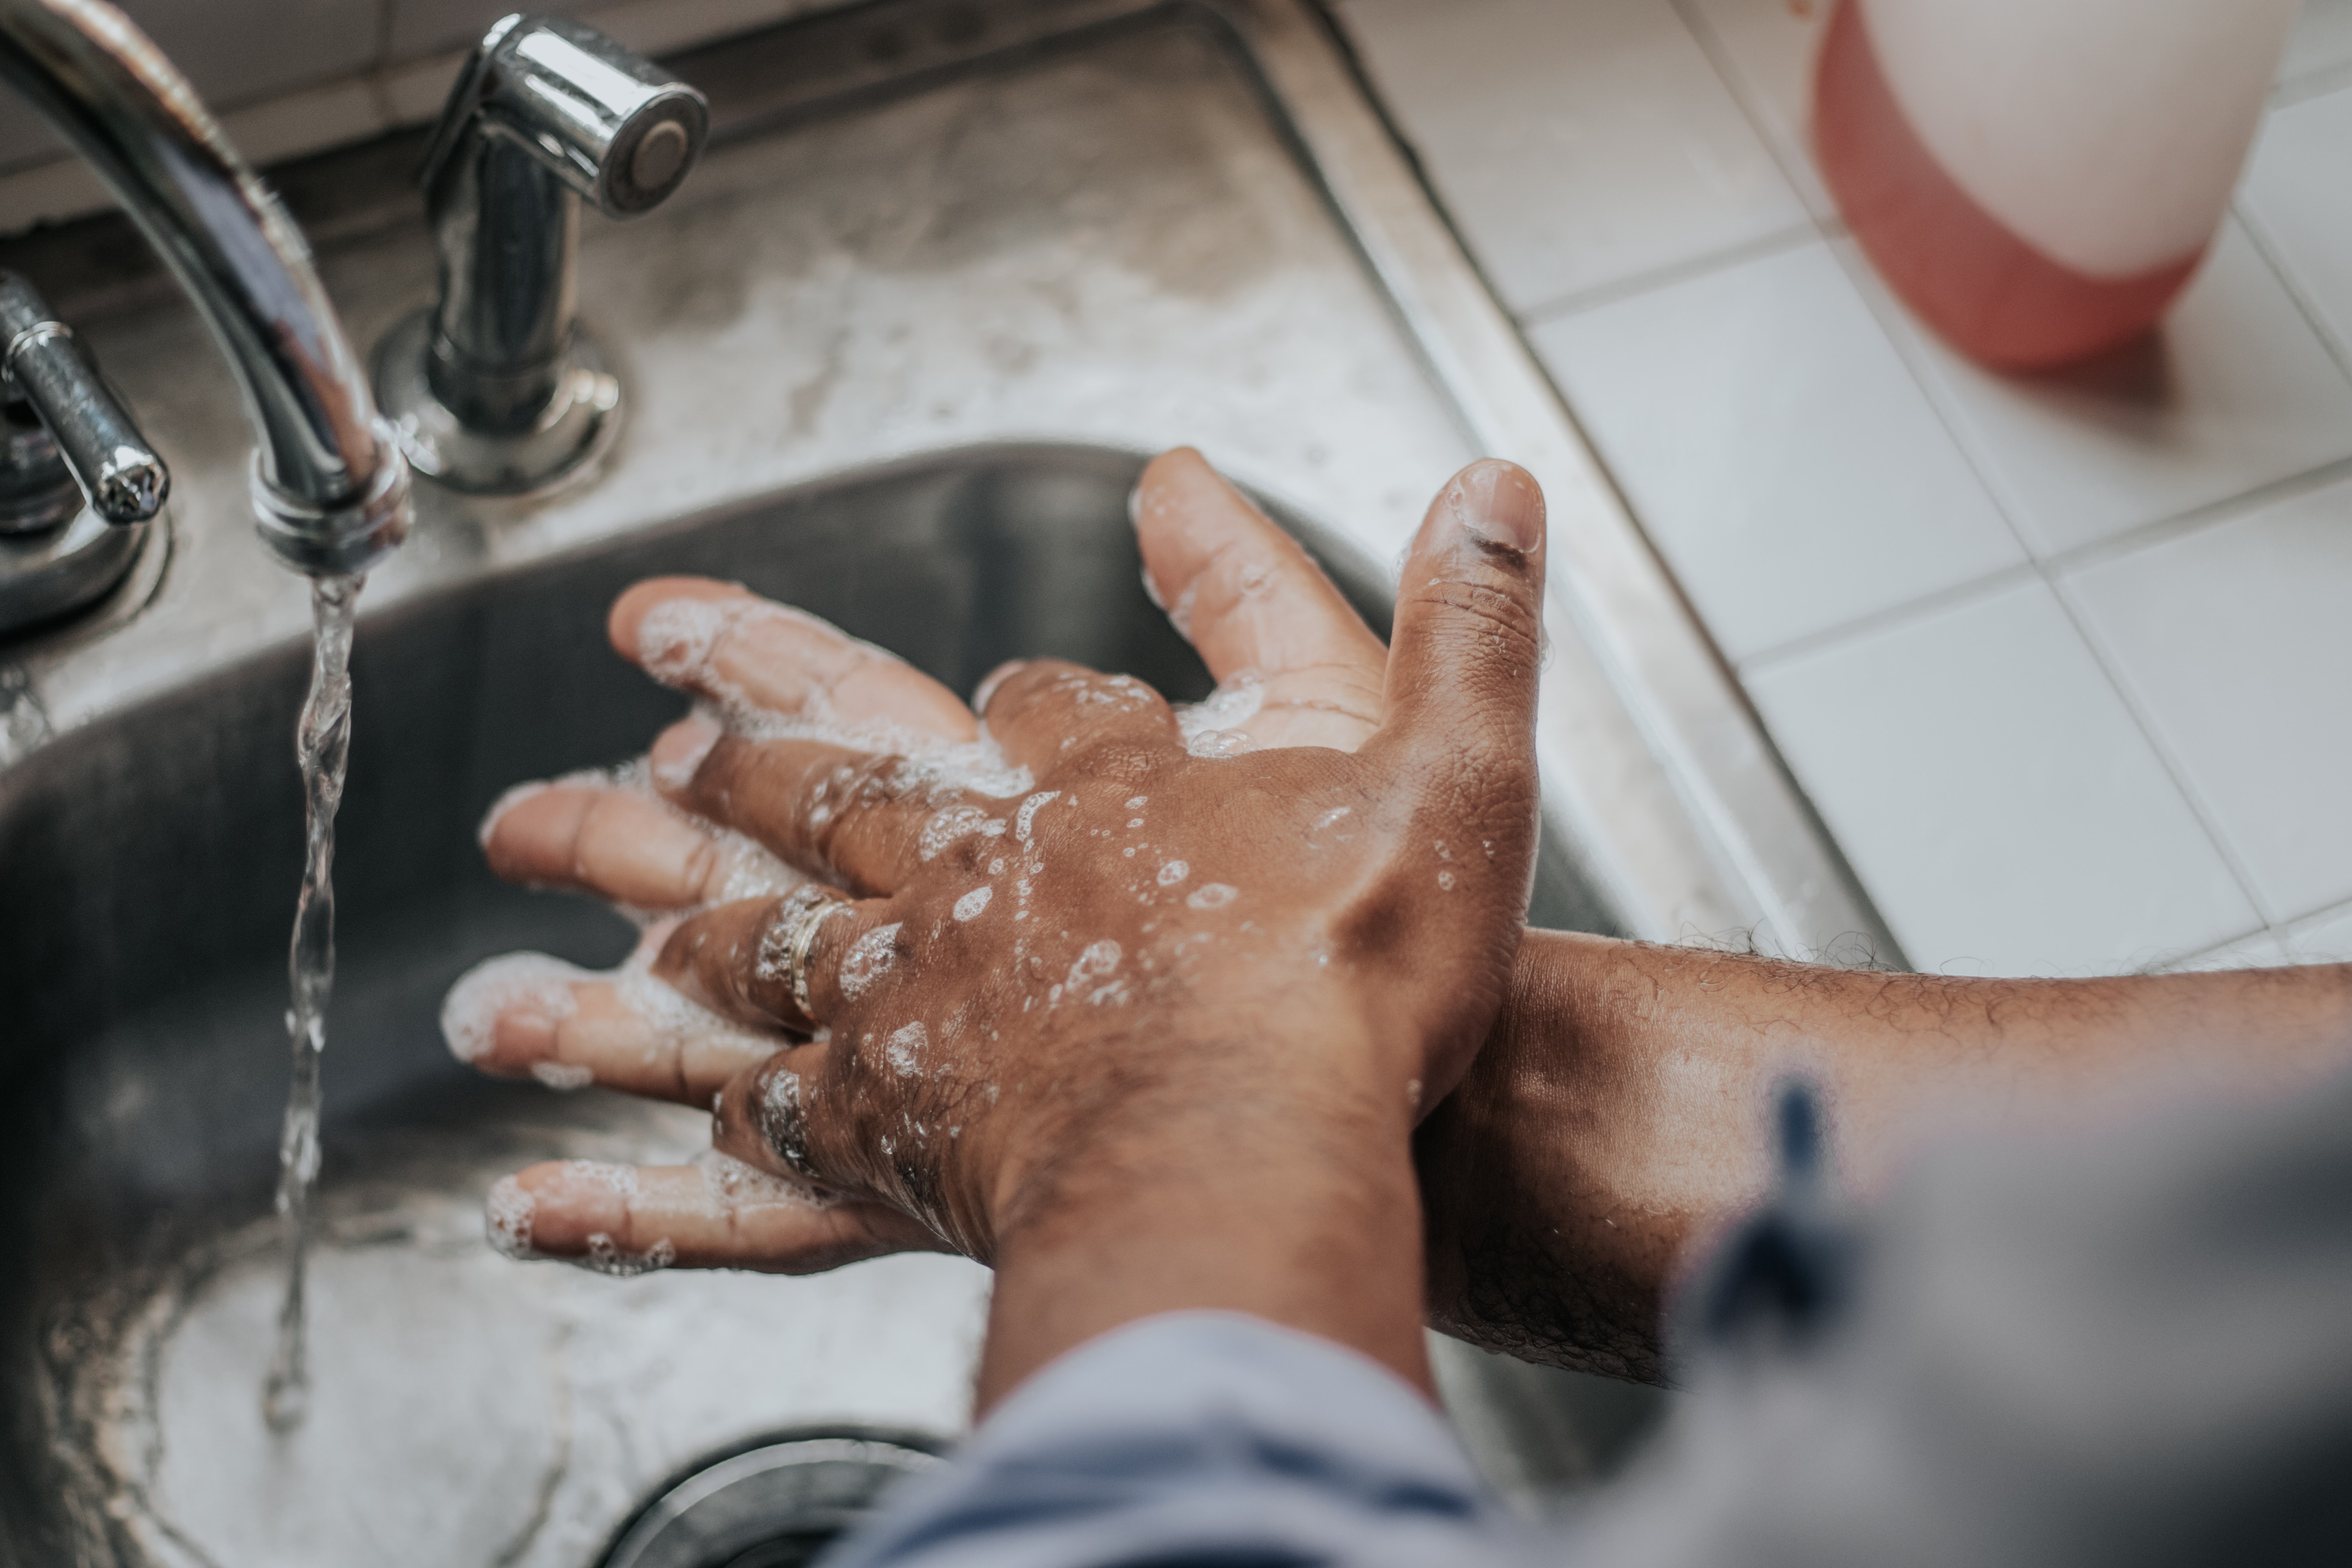 Person washing their hands, Haiti